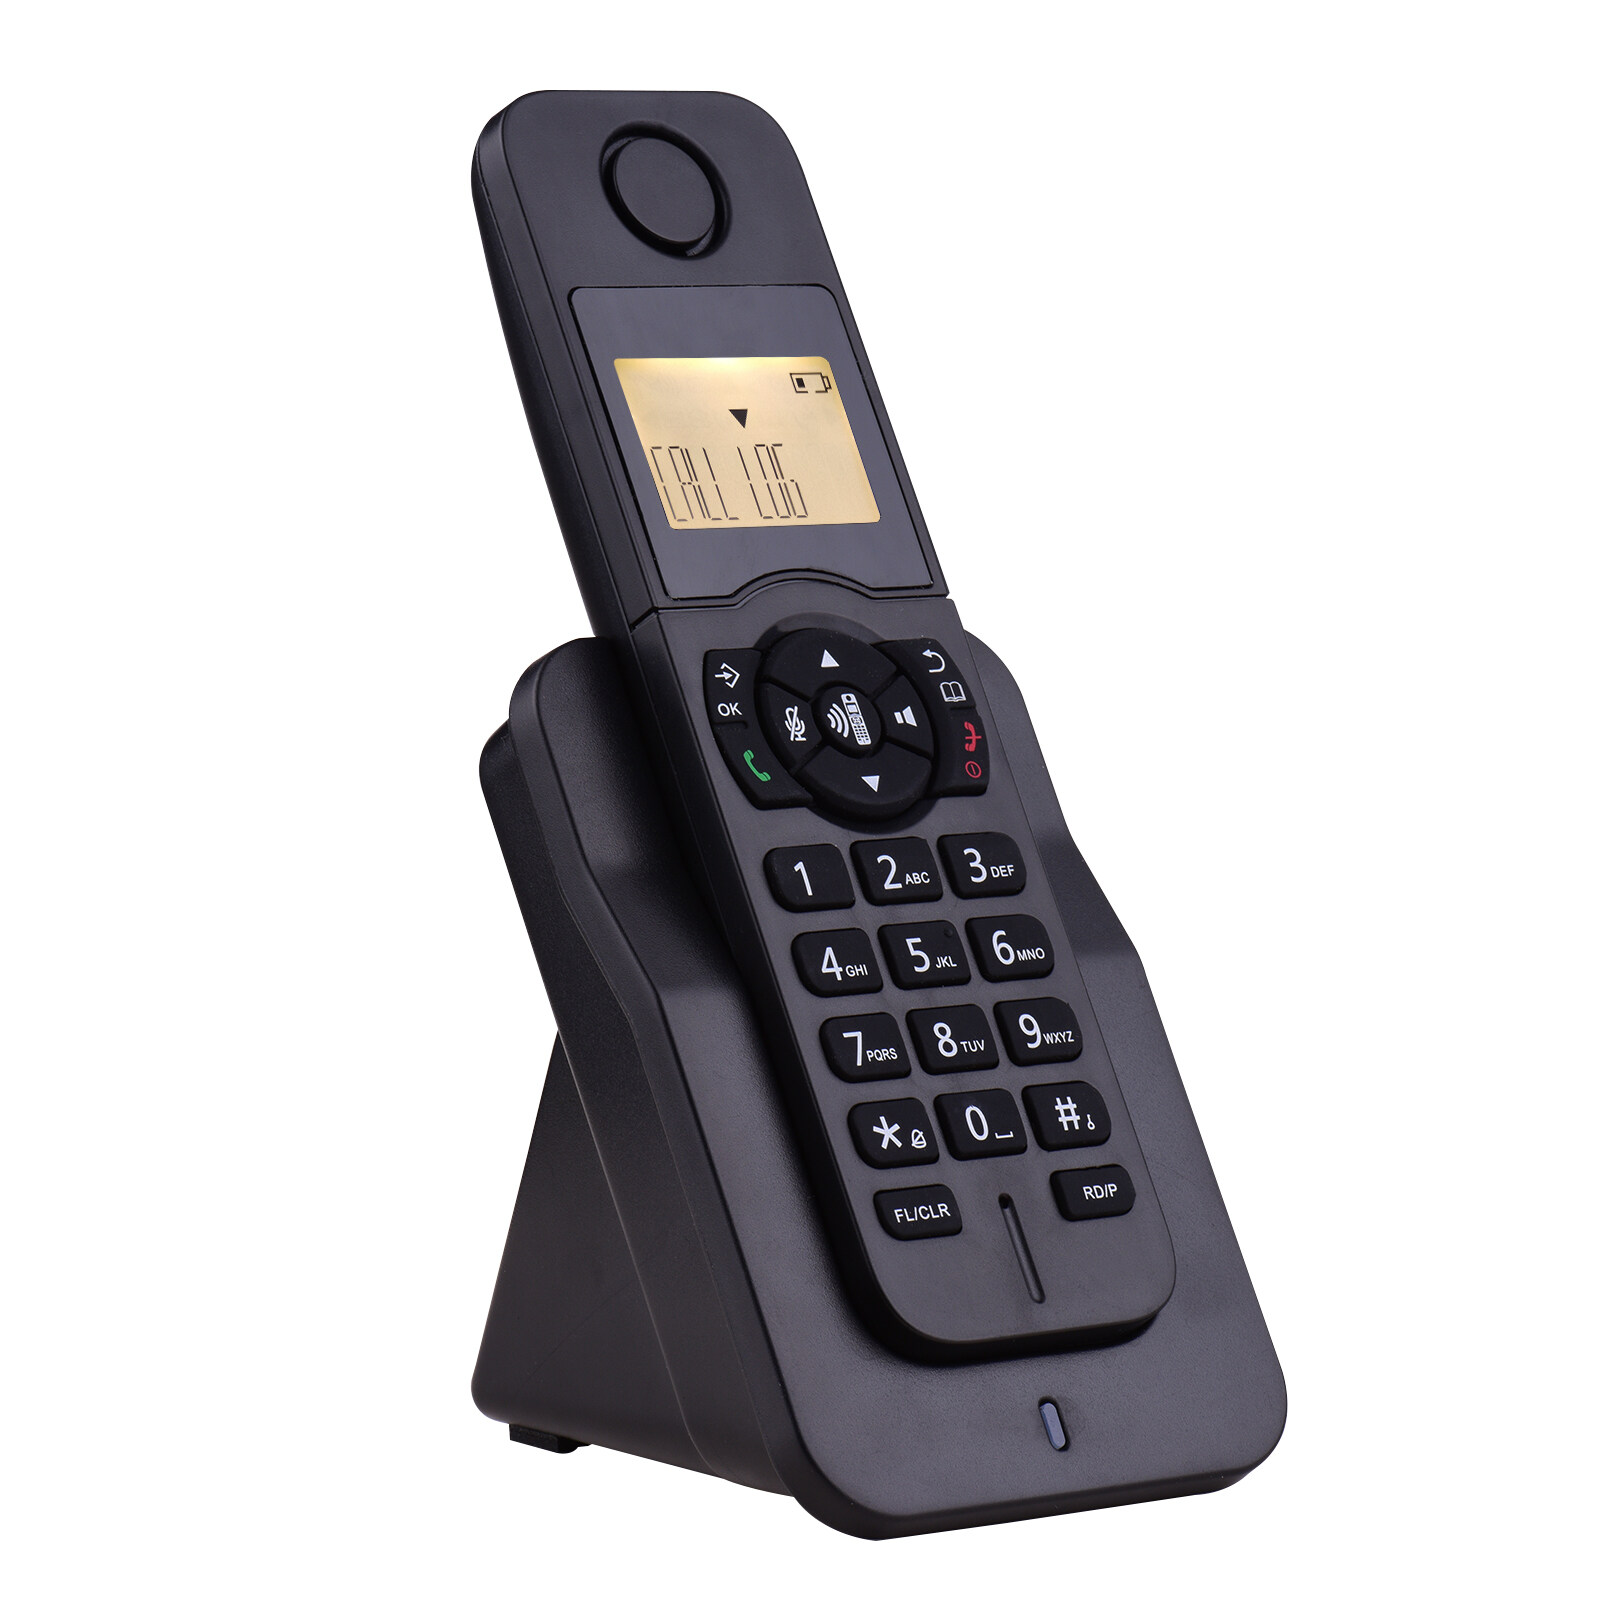 ขยายโทรศัพท์ไร้สายโทรศัพท์จอแสดงผลLCDหมายเลขผู้โทร50สมุดโทรศัพท์ความทรงจำแฮนด์ฟรีConference Call 16ภาษาสนับสนุน5การเชื่อมต่อสำหรับสำนักงานธุรกิจครอบครัว